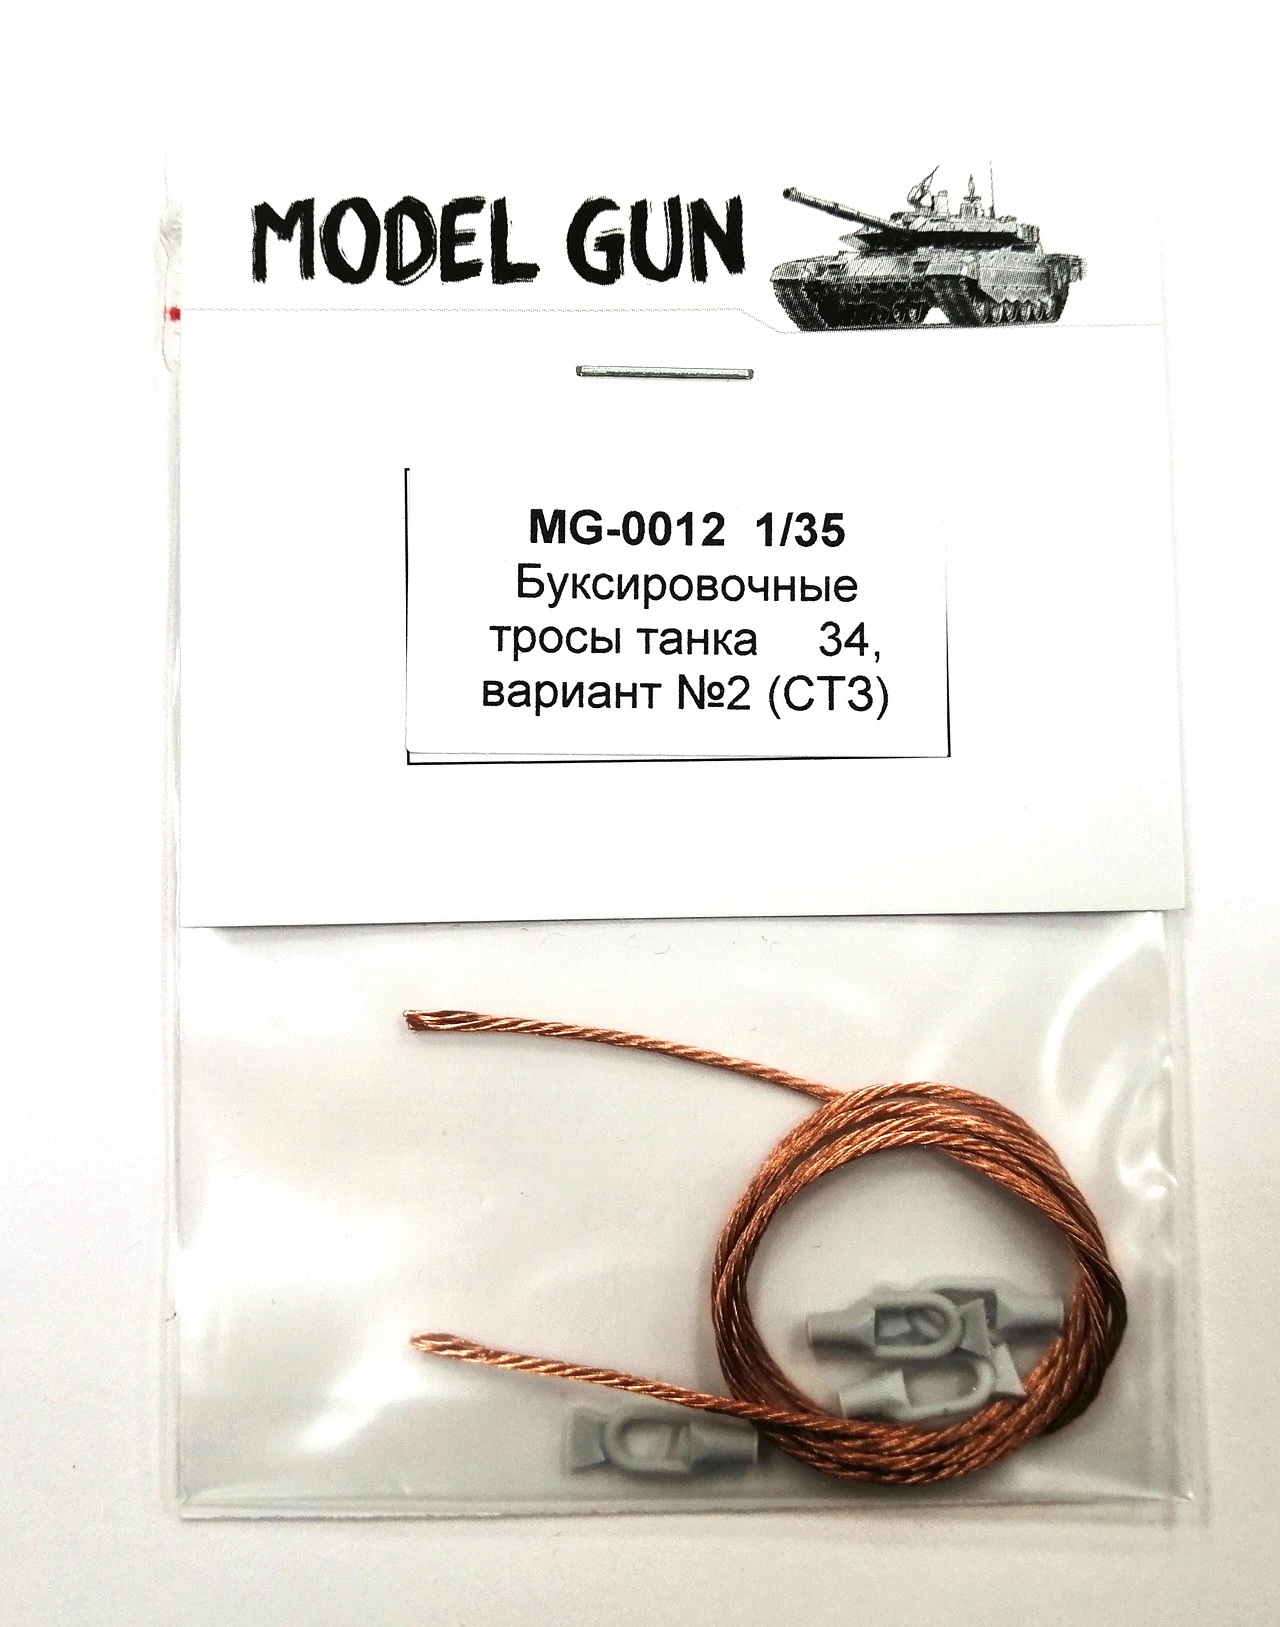 MG-0012  дополнения из металла  Буксировочные тросы Т-34 СТЗ  (1:35)